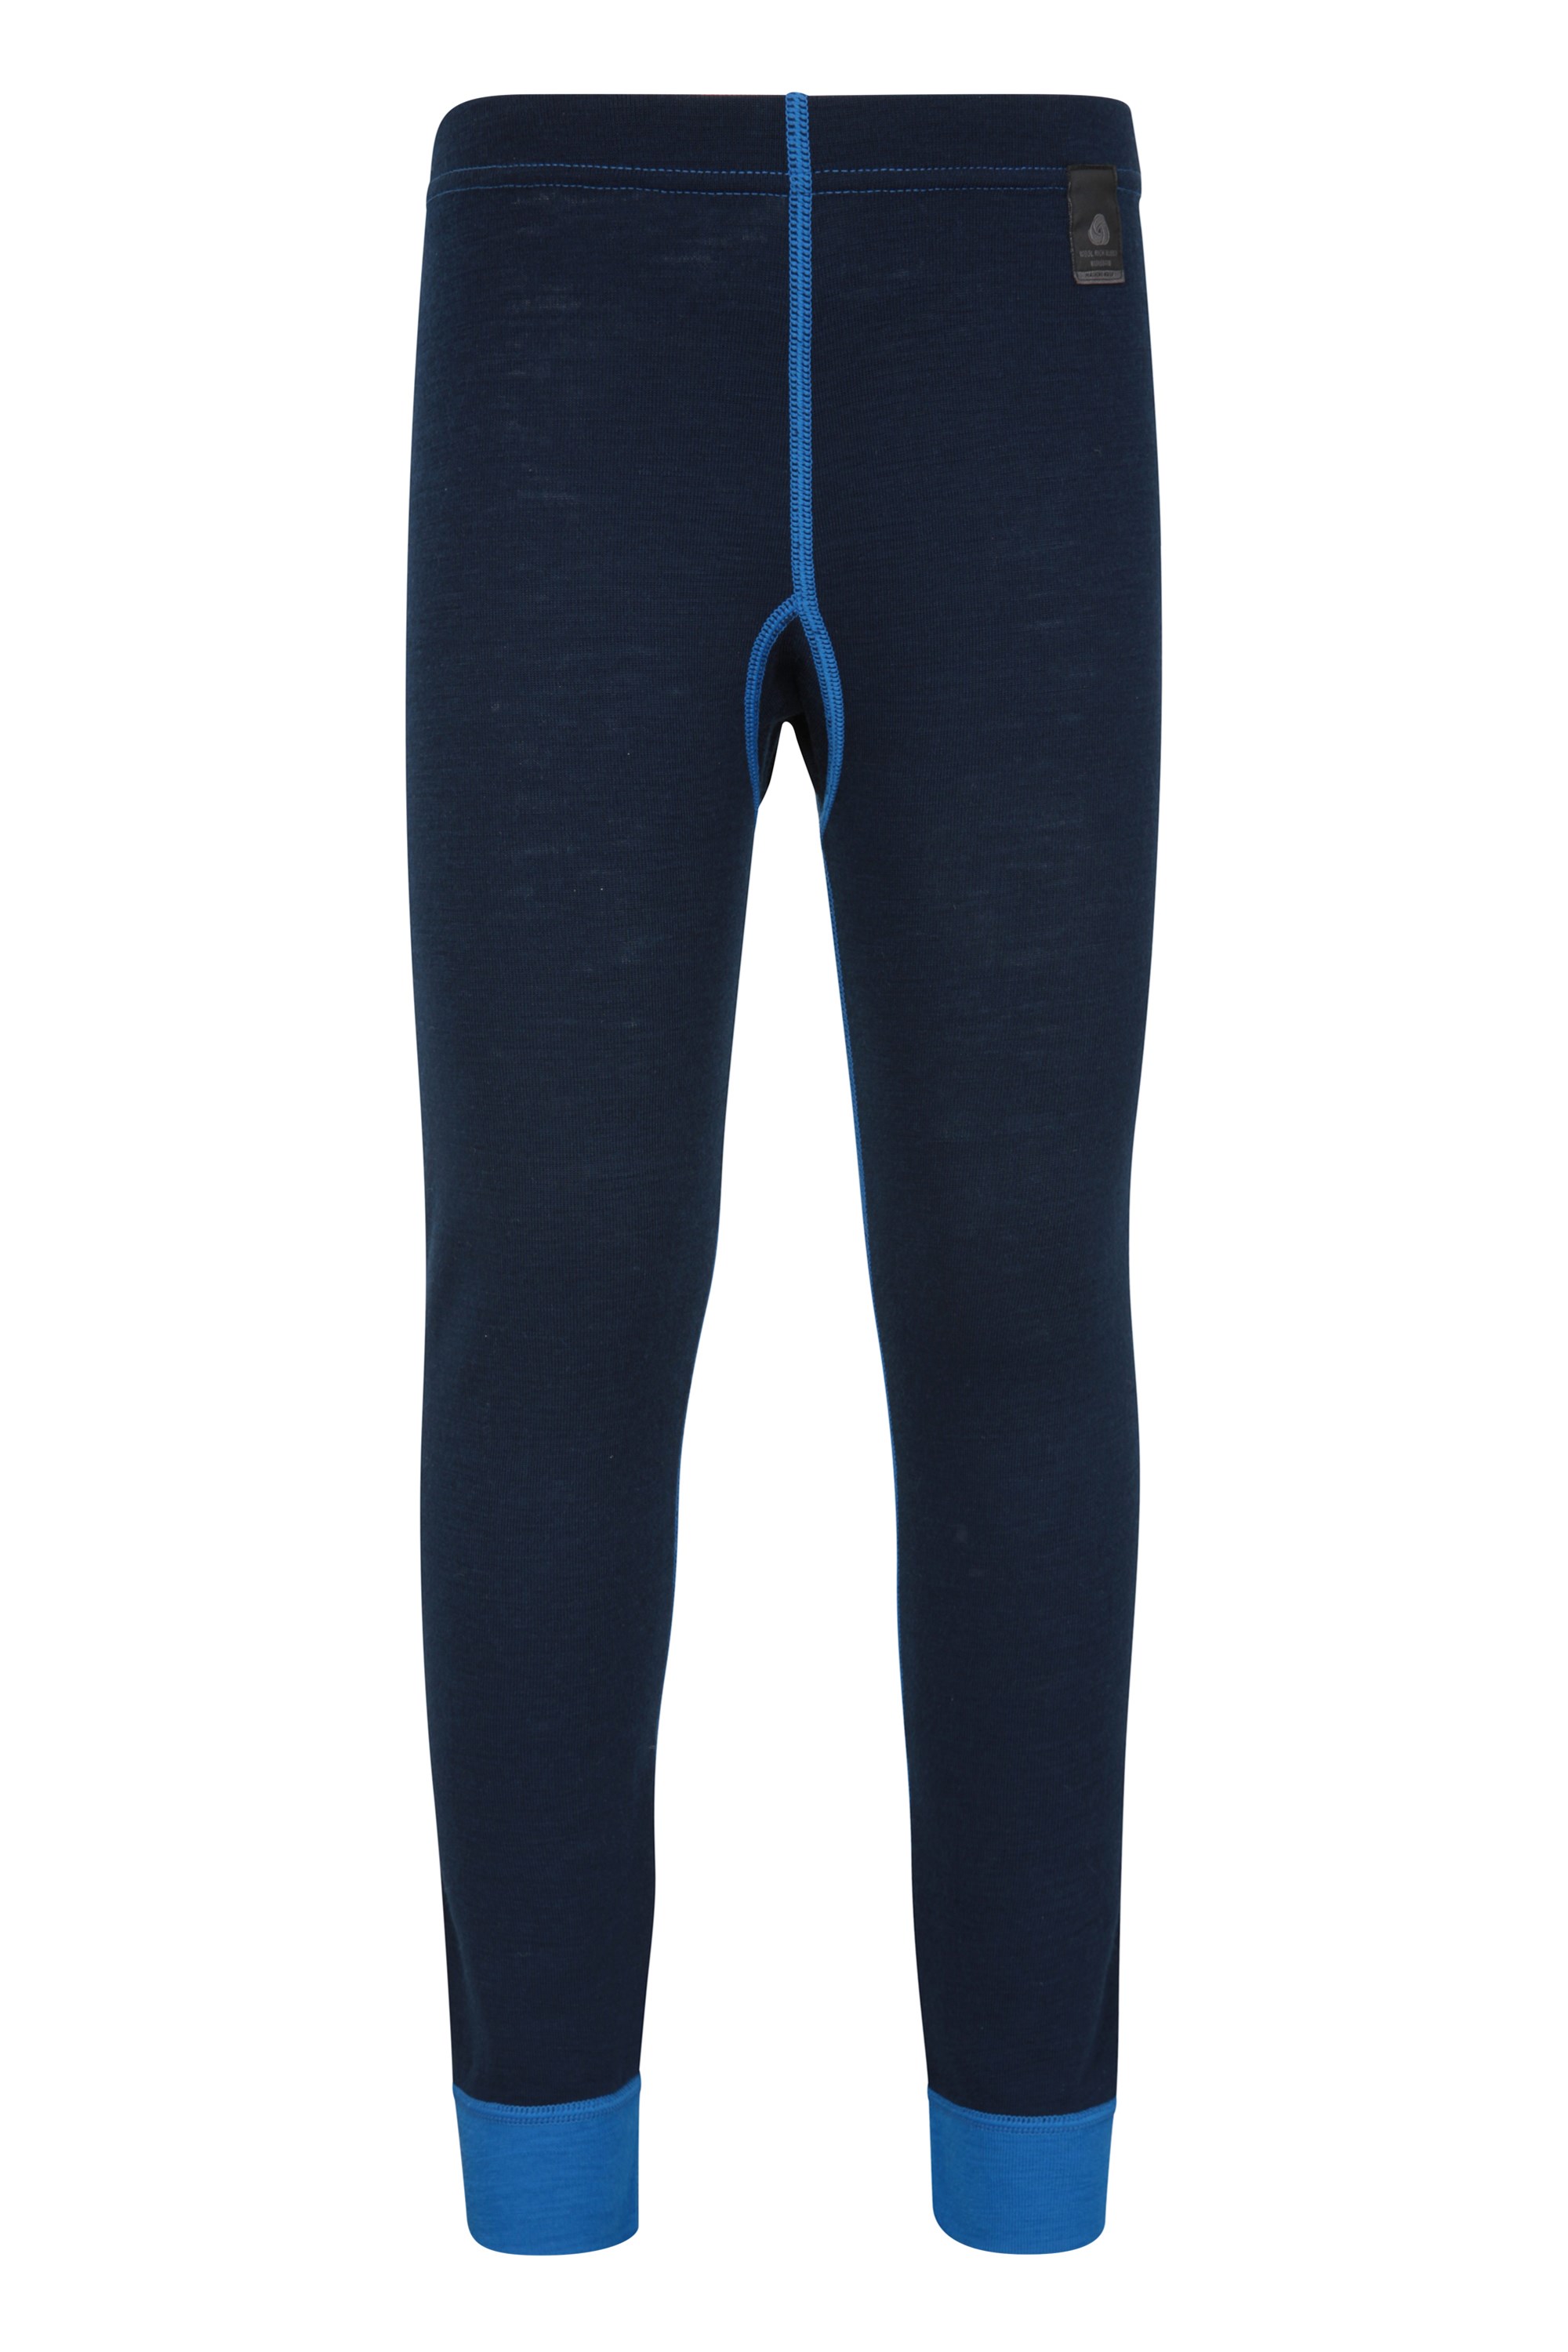 Pantalon thermique enfant Merino-base layer - Bleu